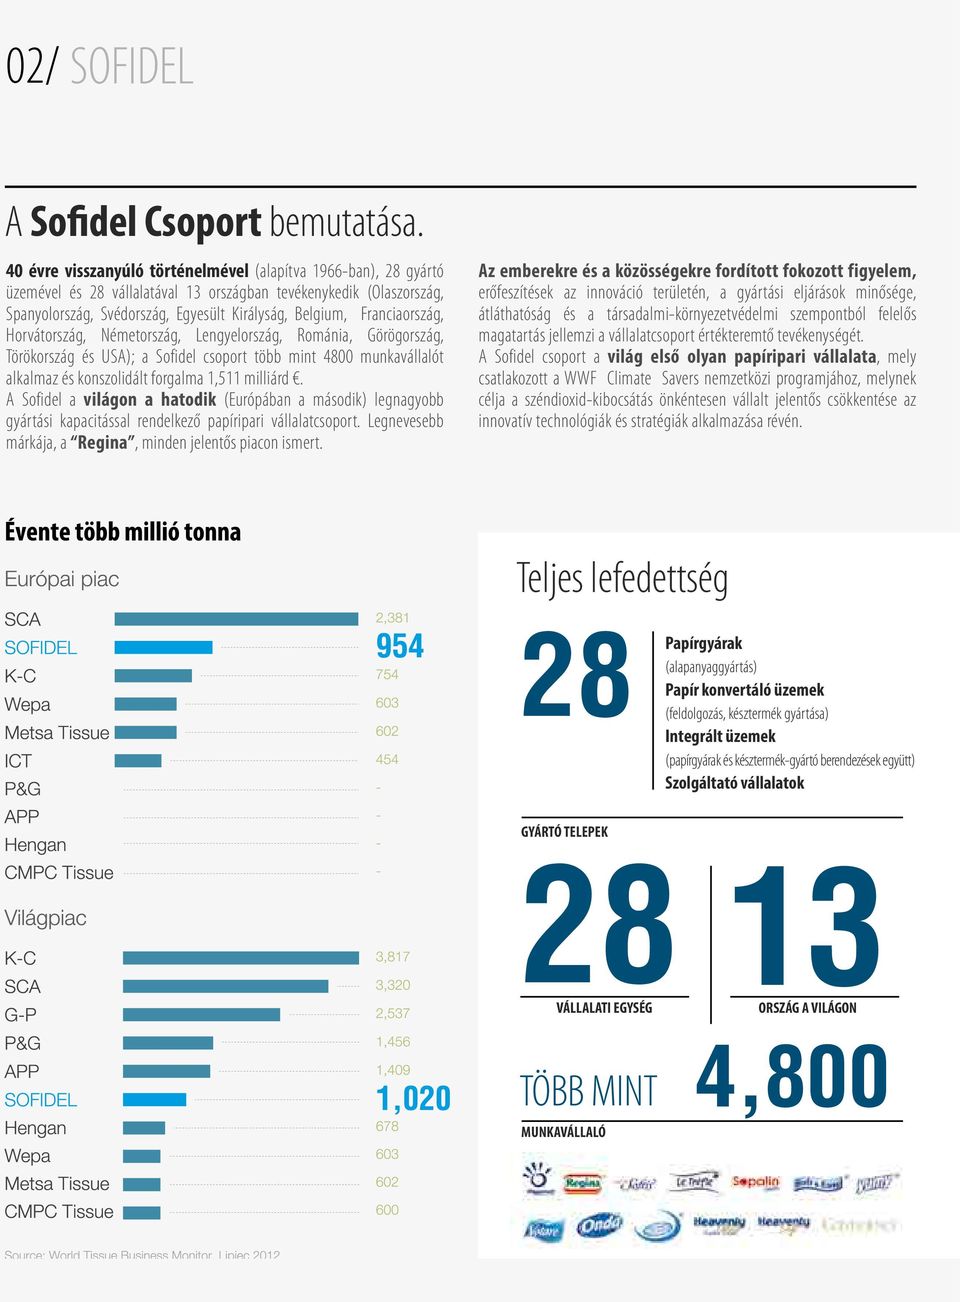 Franciaország, Horvátország, Néetország, Lengyelország, Roánia, Görögország, Törökország és USA); a Sofidel csoport több int 4800 unkavállalót alkalaz és konszolidált forgala 1,511 illiárd.